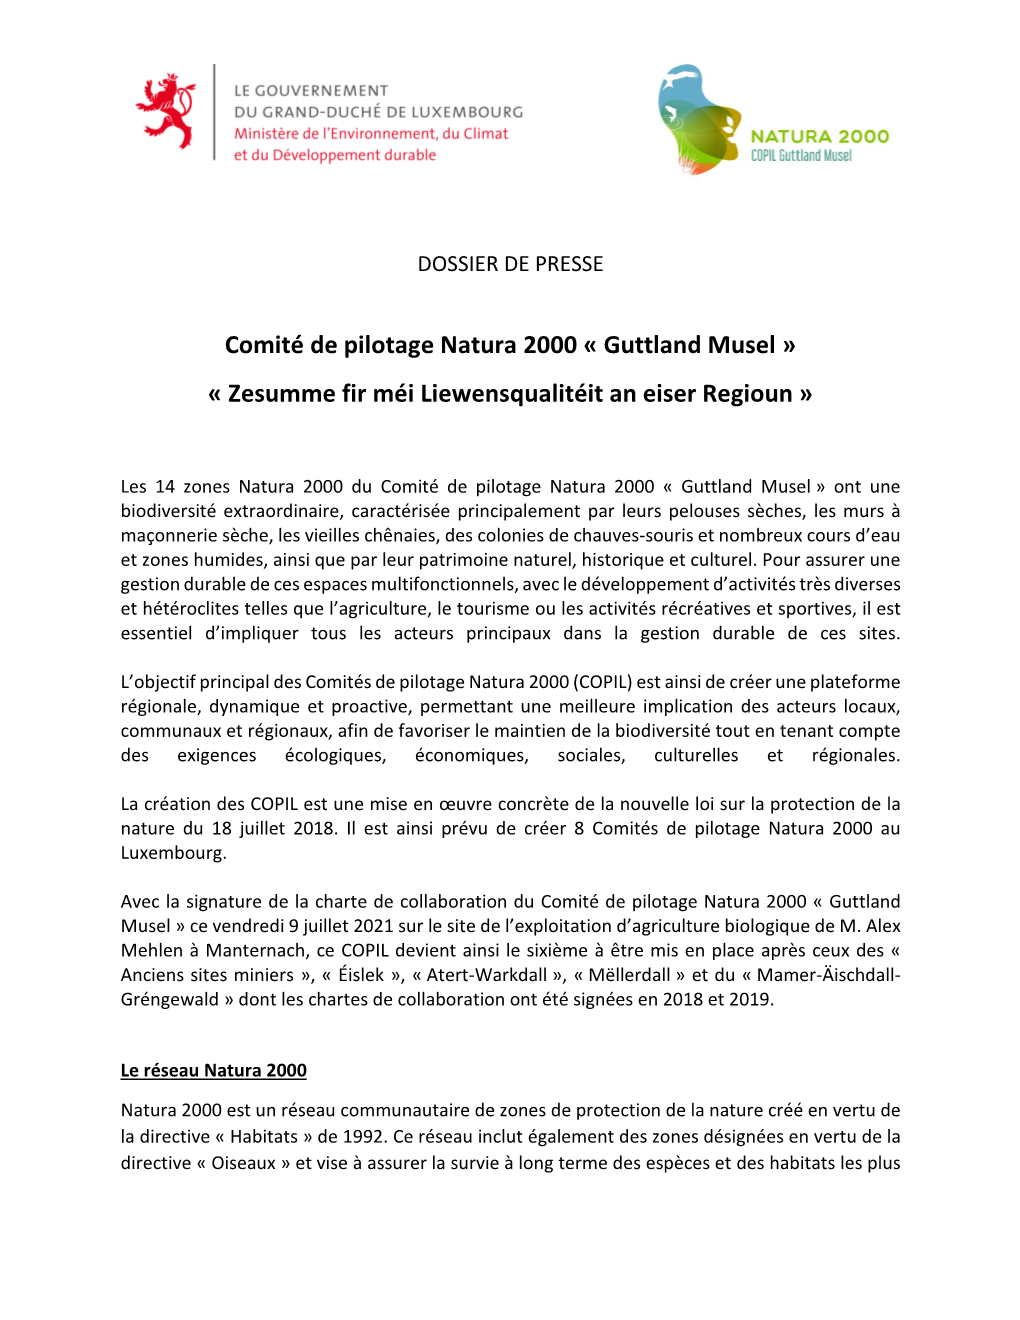 Comité De Pilotage Natura 2000 "Guttland Musel"